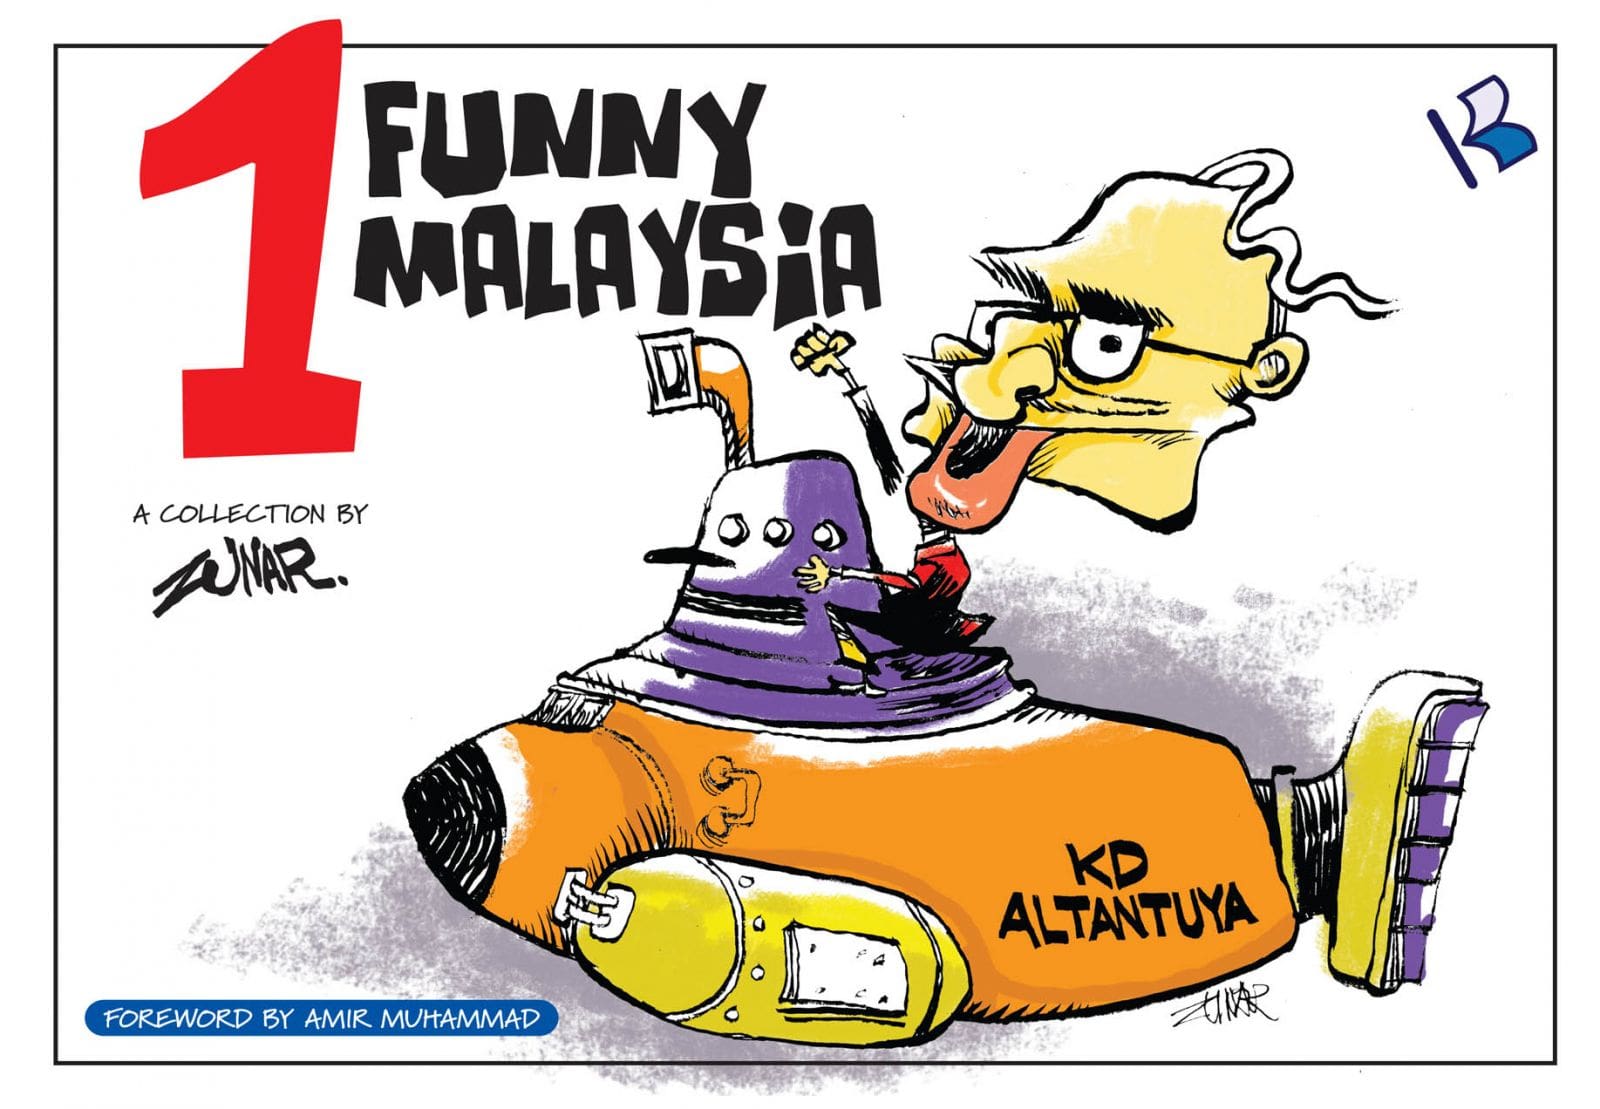 Malaysian Federal Court confirms lifting cartoon ban